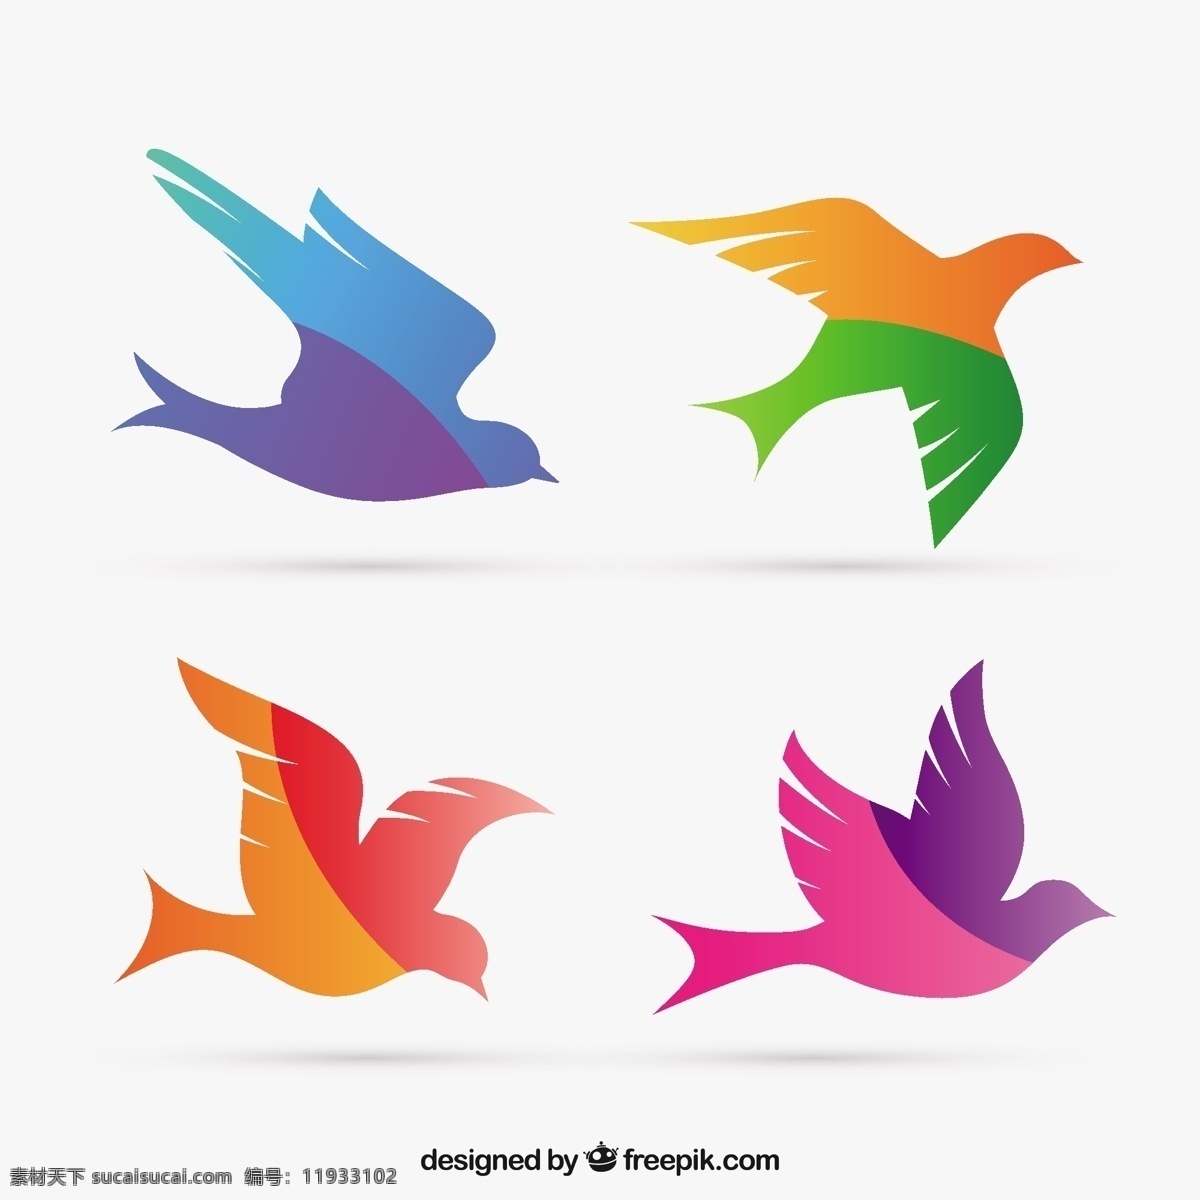 多彩鸟剪影 动物 剪影 色彩鲜艳 飞行 鸽子 有色 图标 高清 源文件